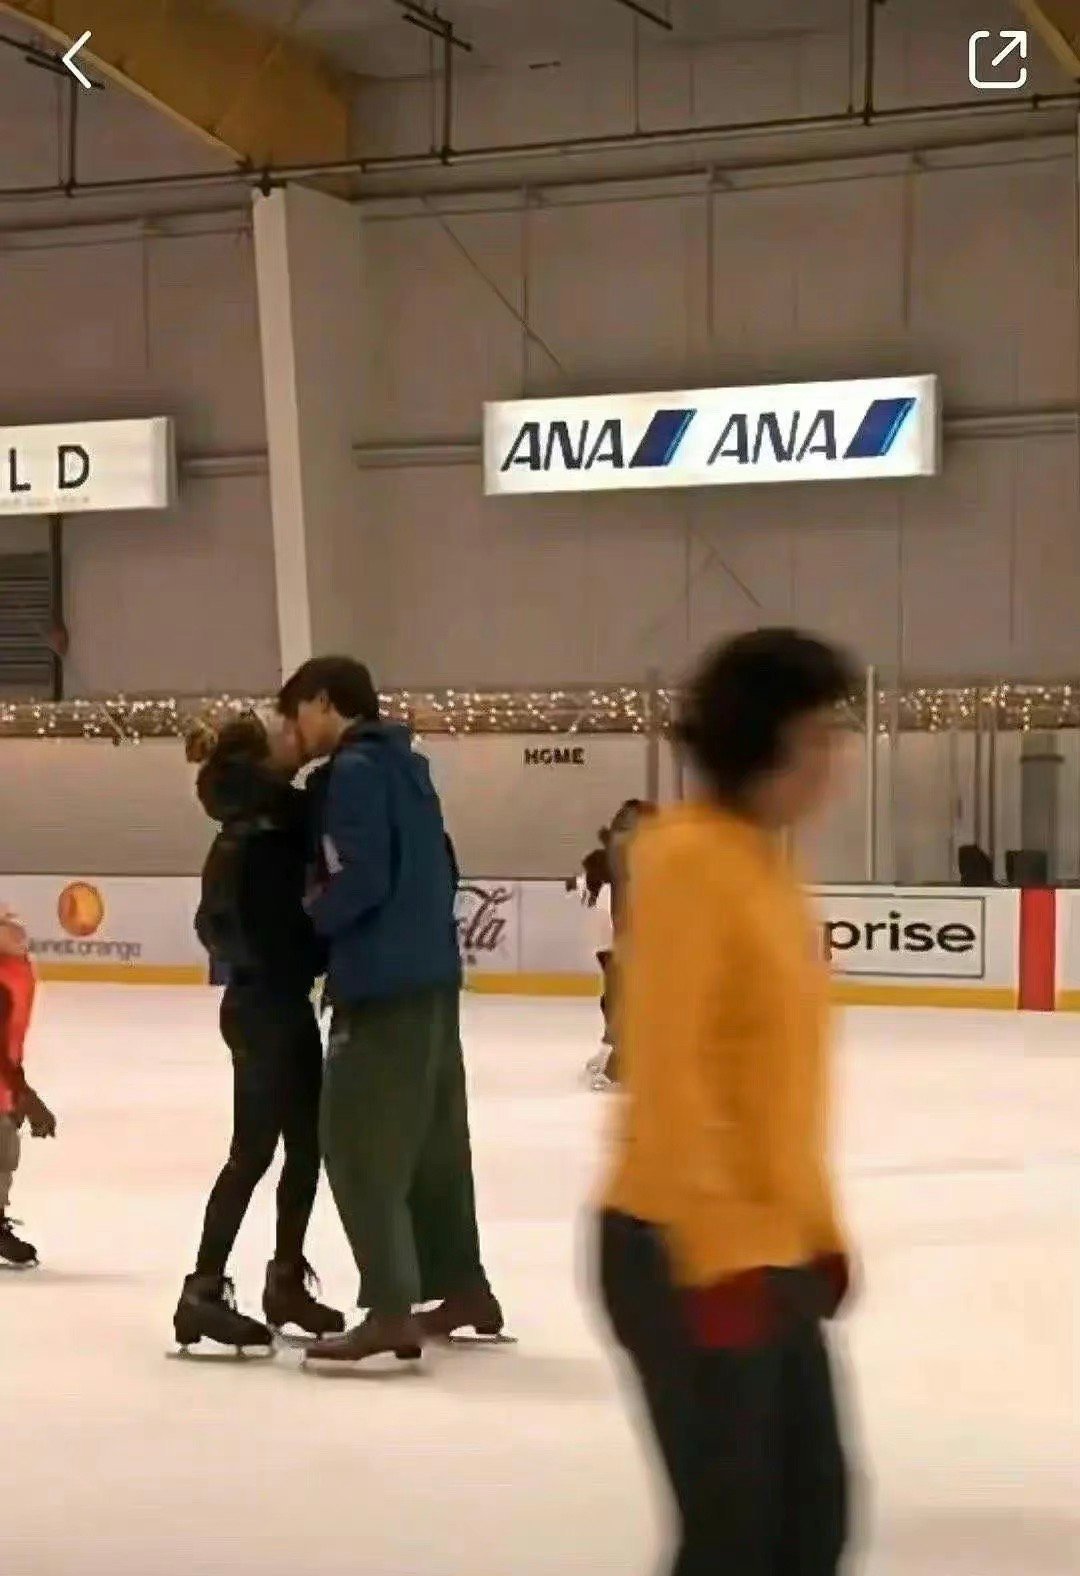 网友偶遇谷爱凌在滑冰场与男子接吻  疑似恋爱